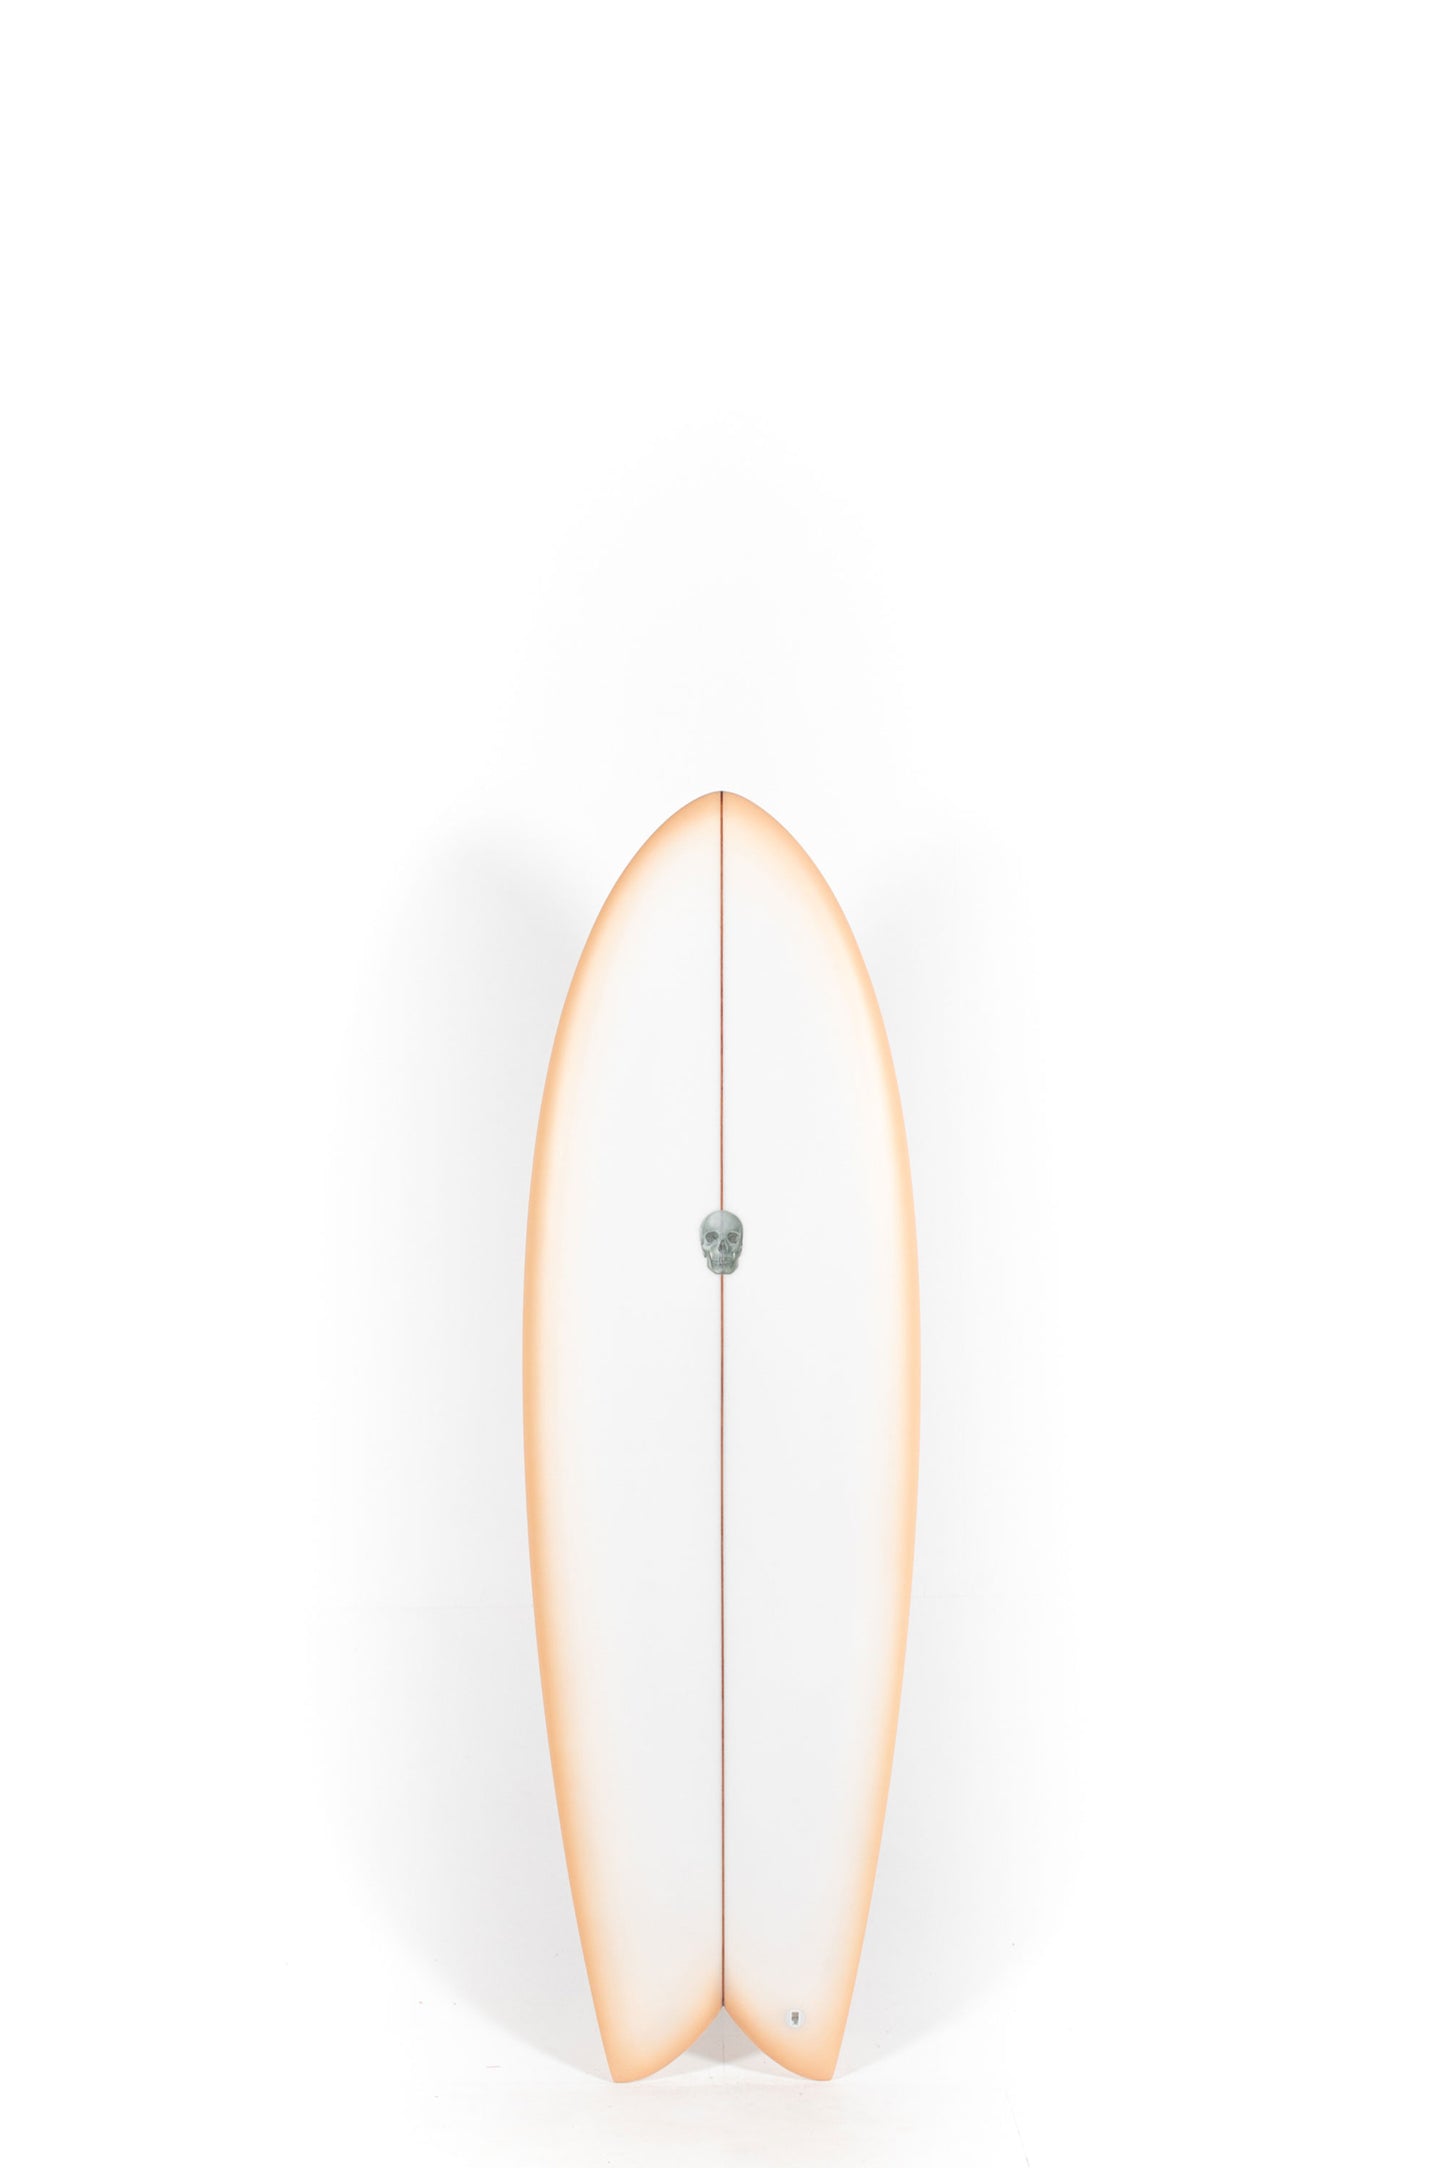 Pukas Surf Shop - Christenson Surfboards - MYCONAUT - 5'7" x 20 3/4 x 2 1/2 - CX04346